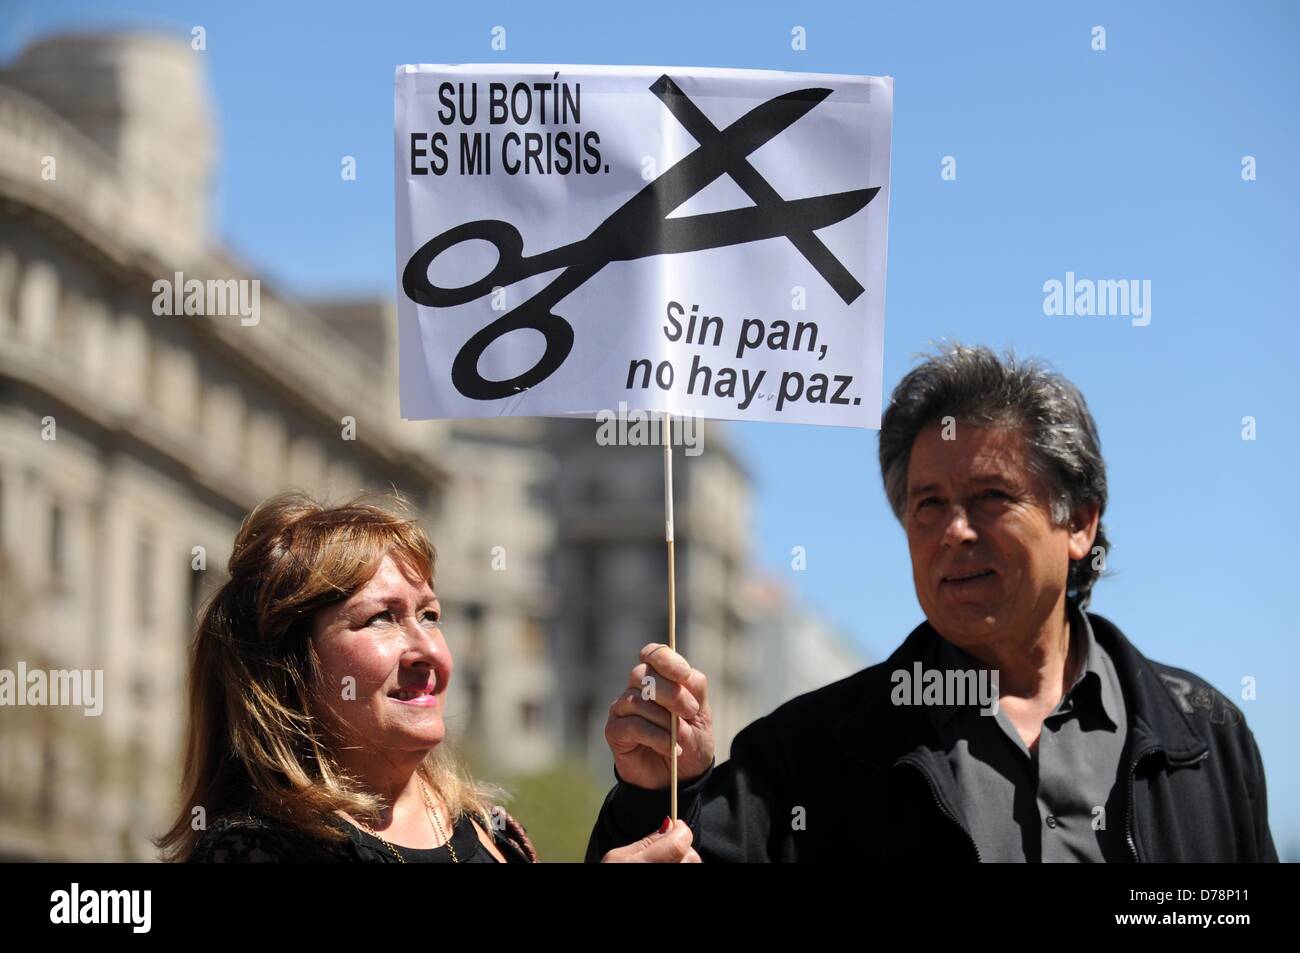 Barcelone, Espagne. 1er mai 2013. Une femme et un homme tenir une pancarte avec l'inscription 'Sin pan no hay paz' ('il n'y a pas de paix sans pain') au cours d'une manifestation du premier mai à Barcelone, Espagne, 01 mai 2013. Photo : Andreas GEBERT/dpa/Alamy Live News Banque D'Images